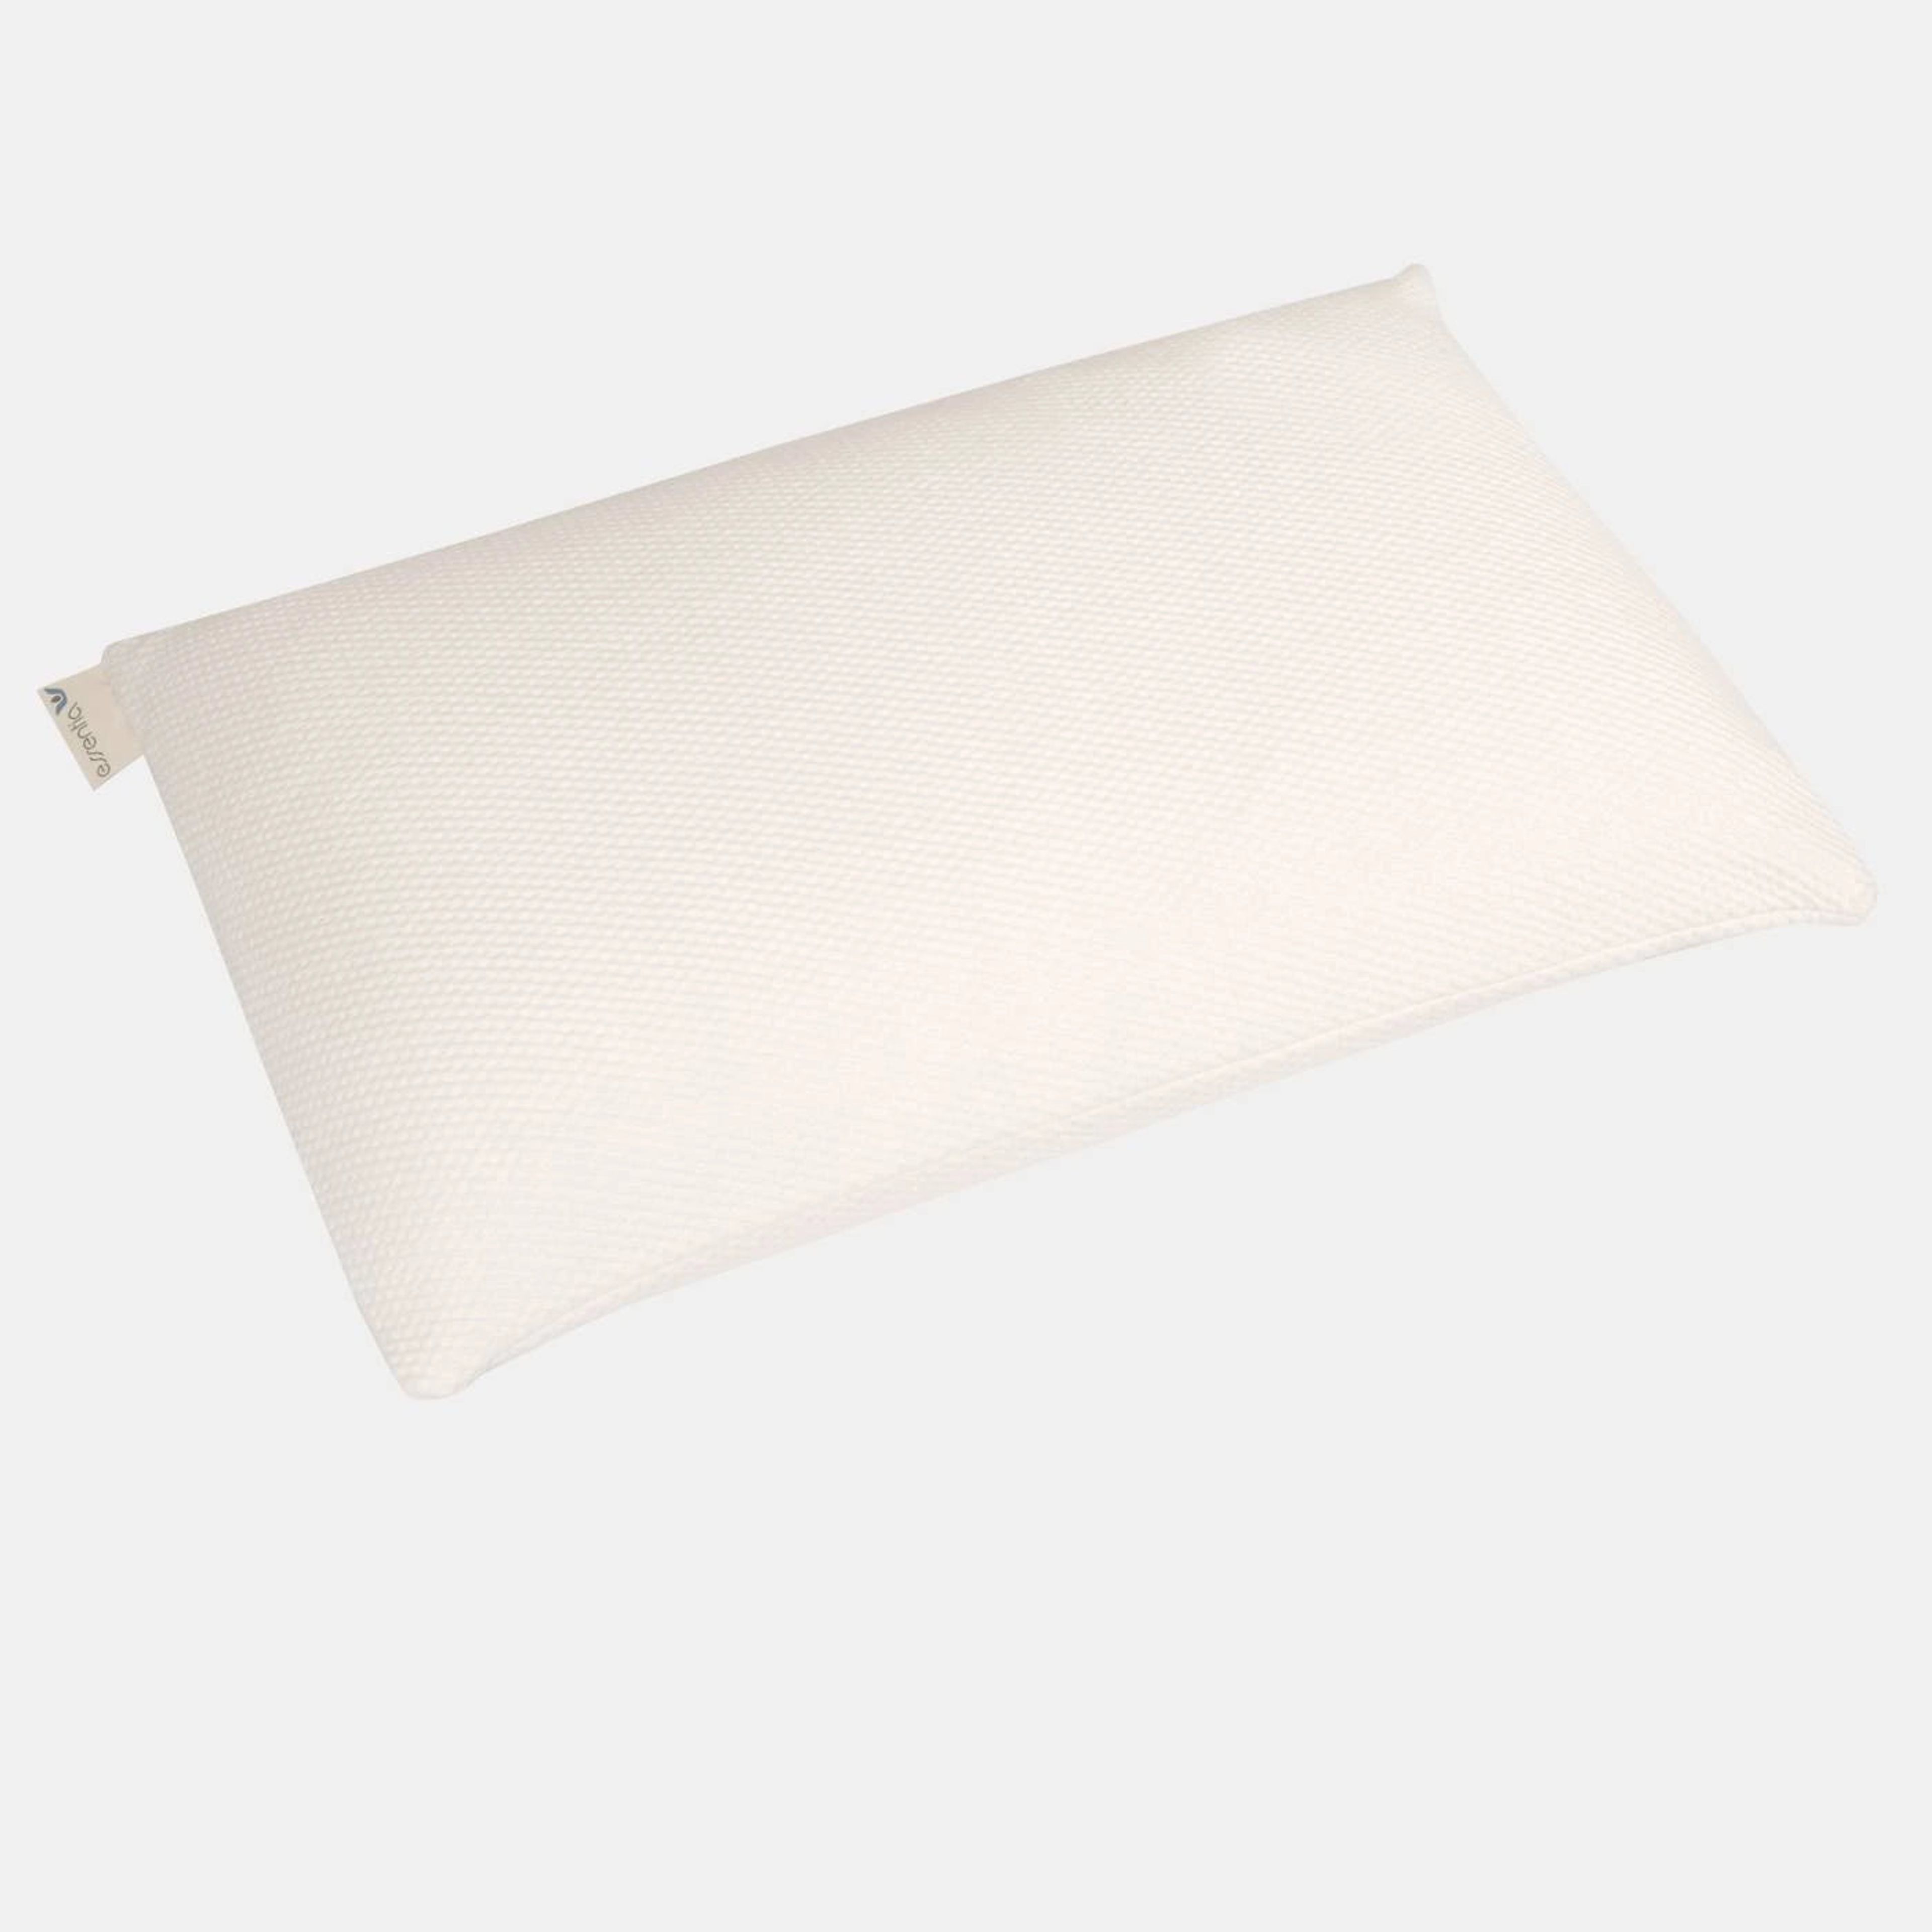 Comfort Latex Pillow